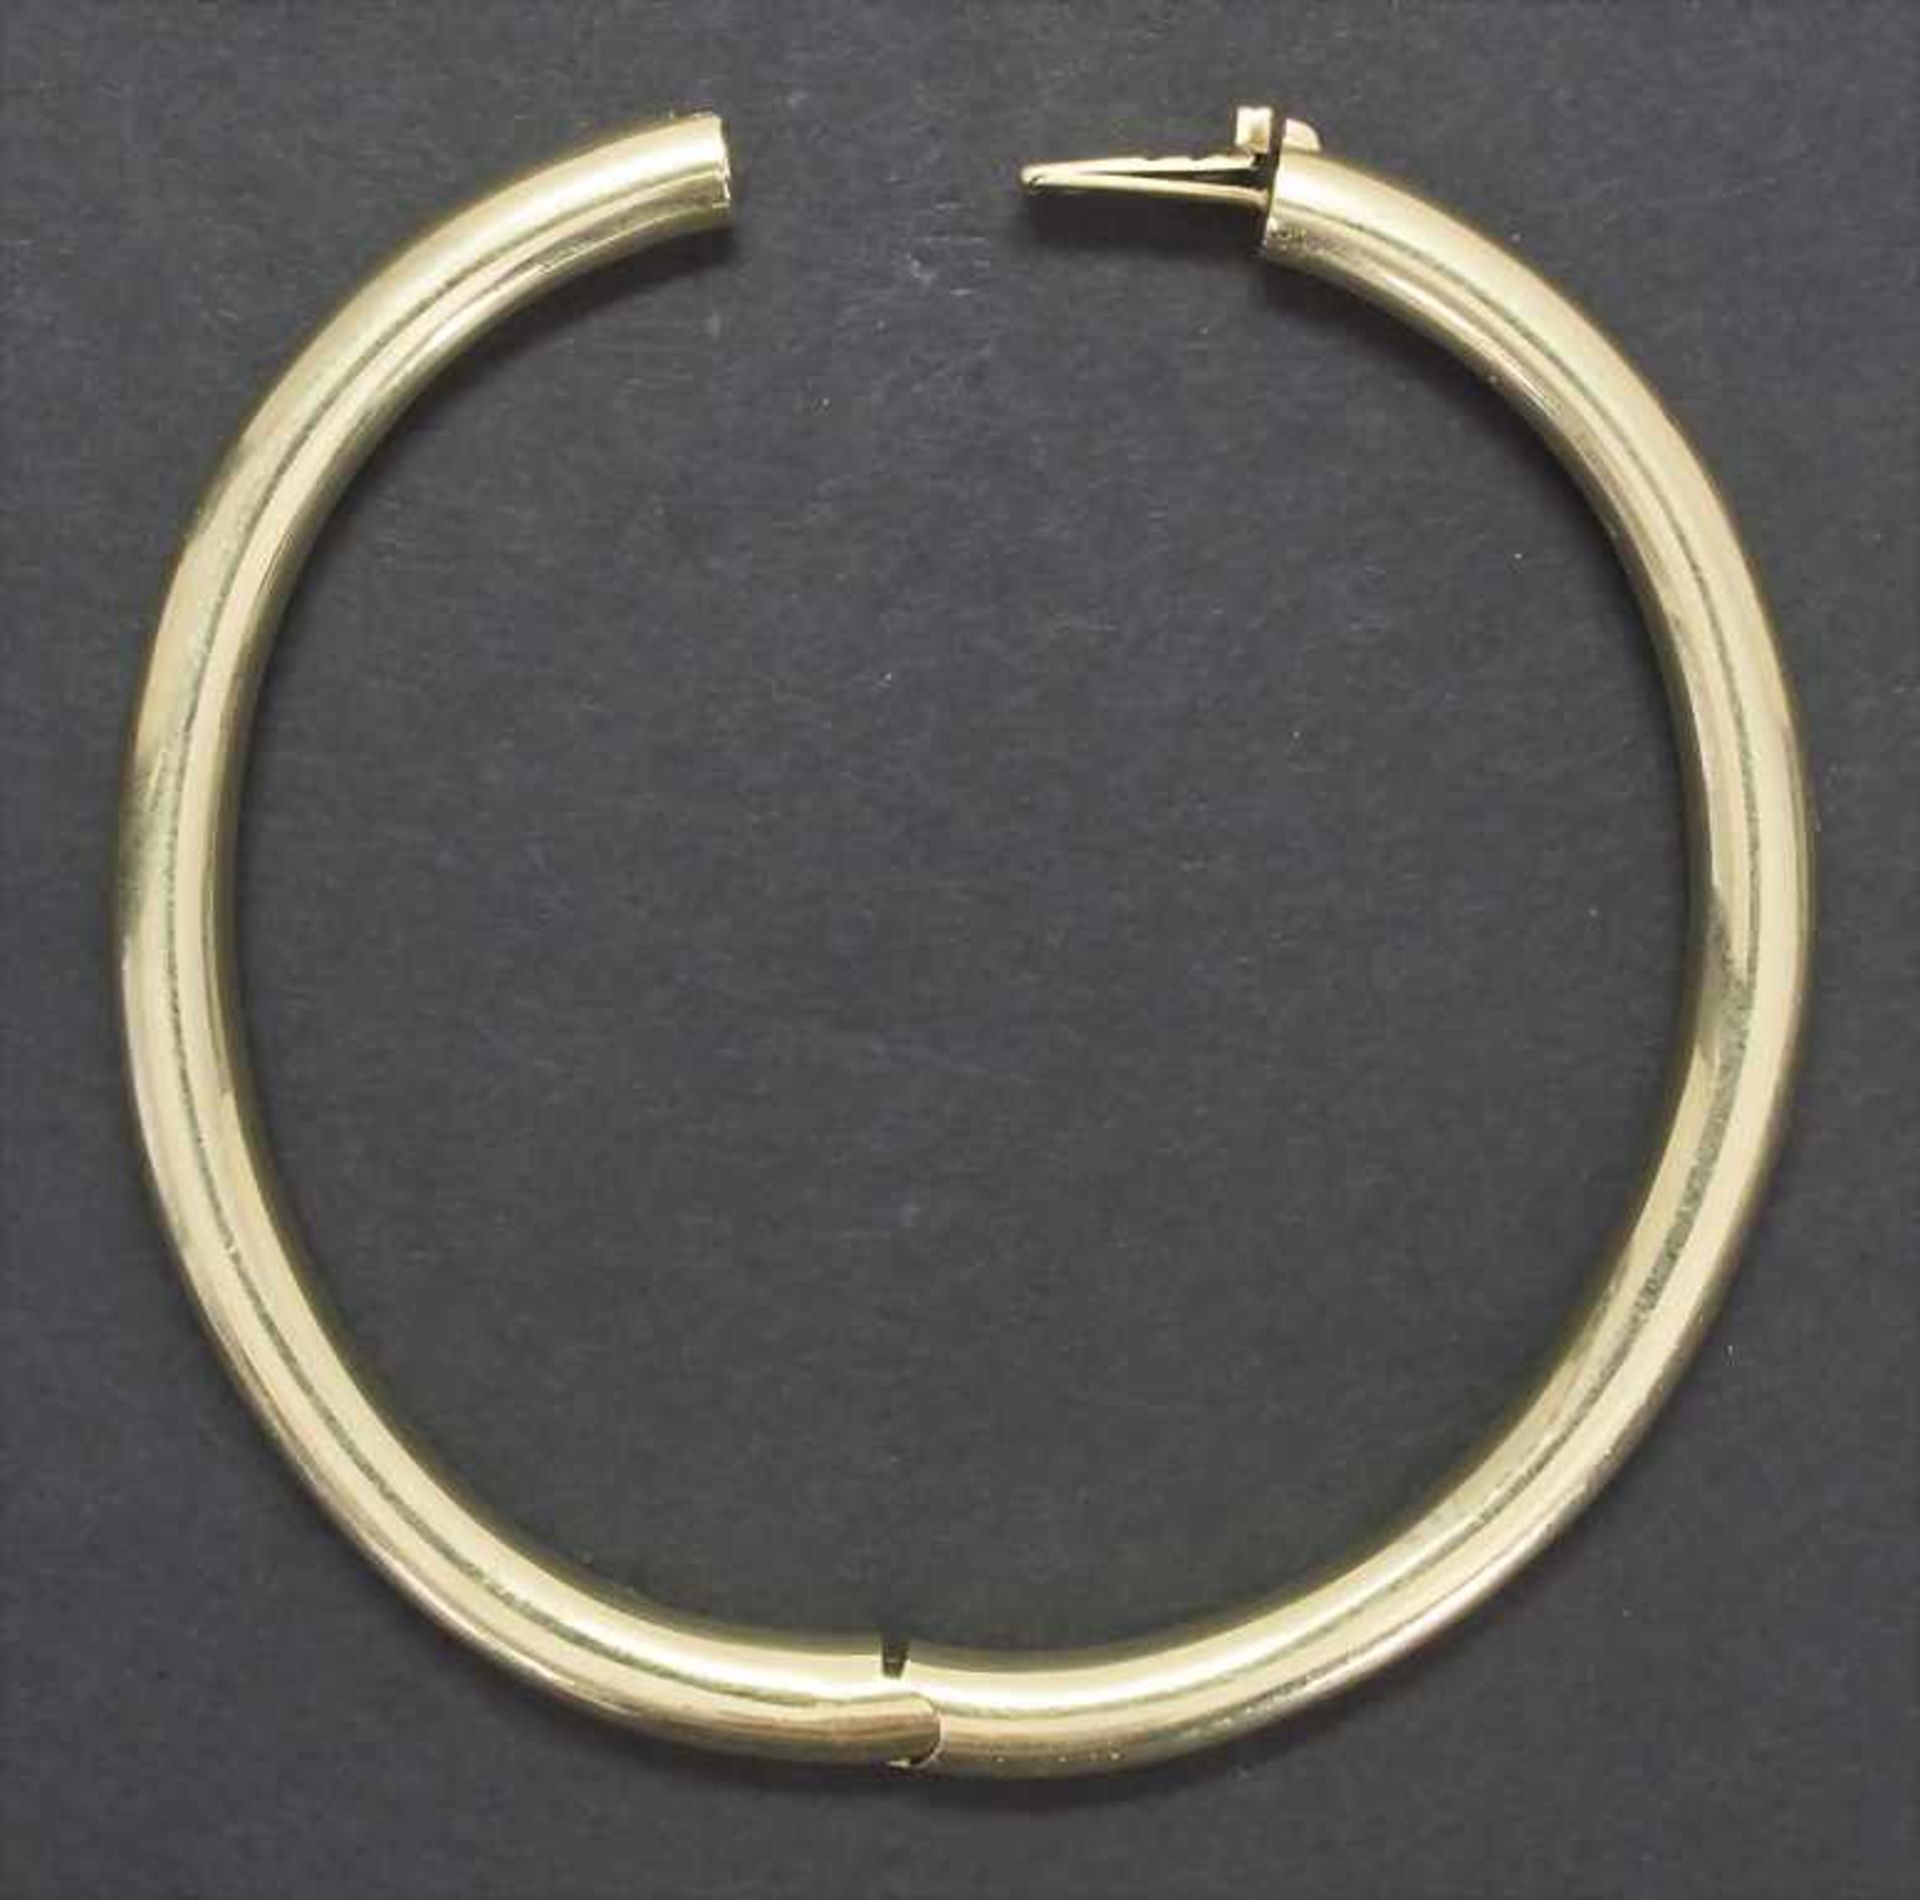 Armreif / A bracelet, 20 Jh.Material: Gelbgold Au 585/000 14 Kt,Maße: innen 50 x 60 mm, D. 5 mm, - Image 2 of 4